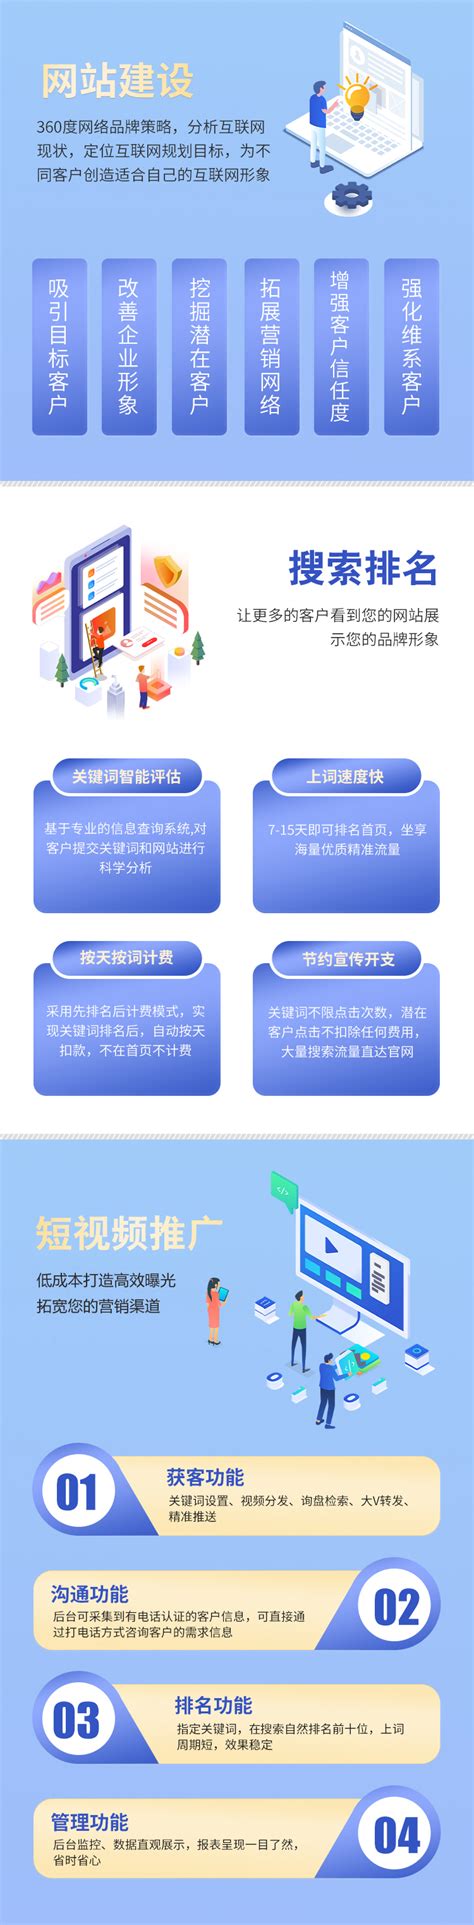 重庆网站推广工具